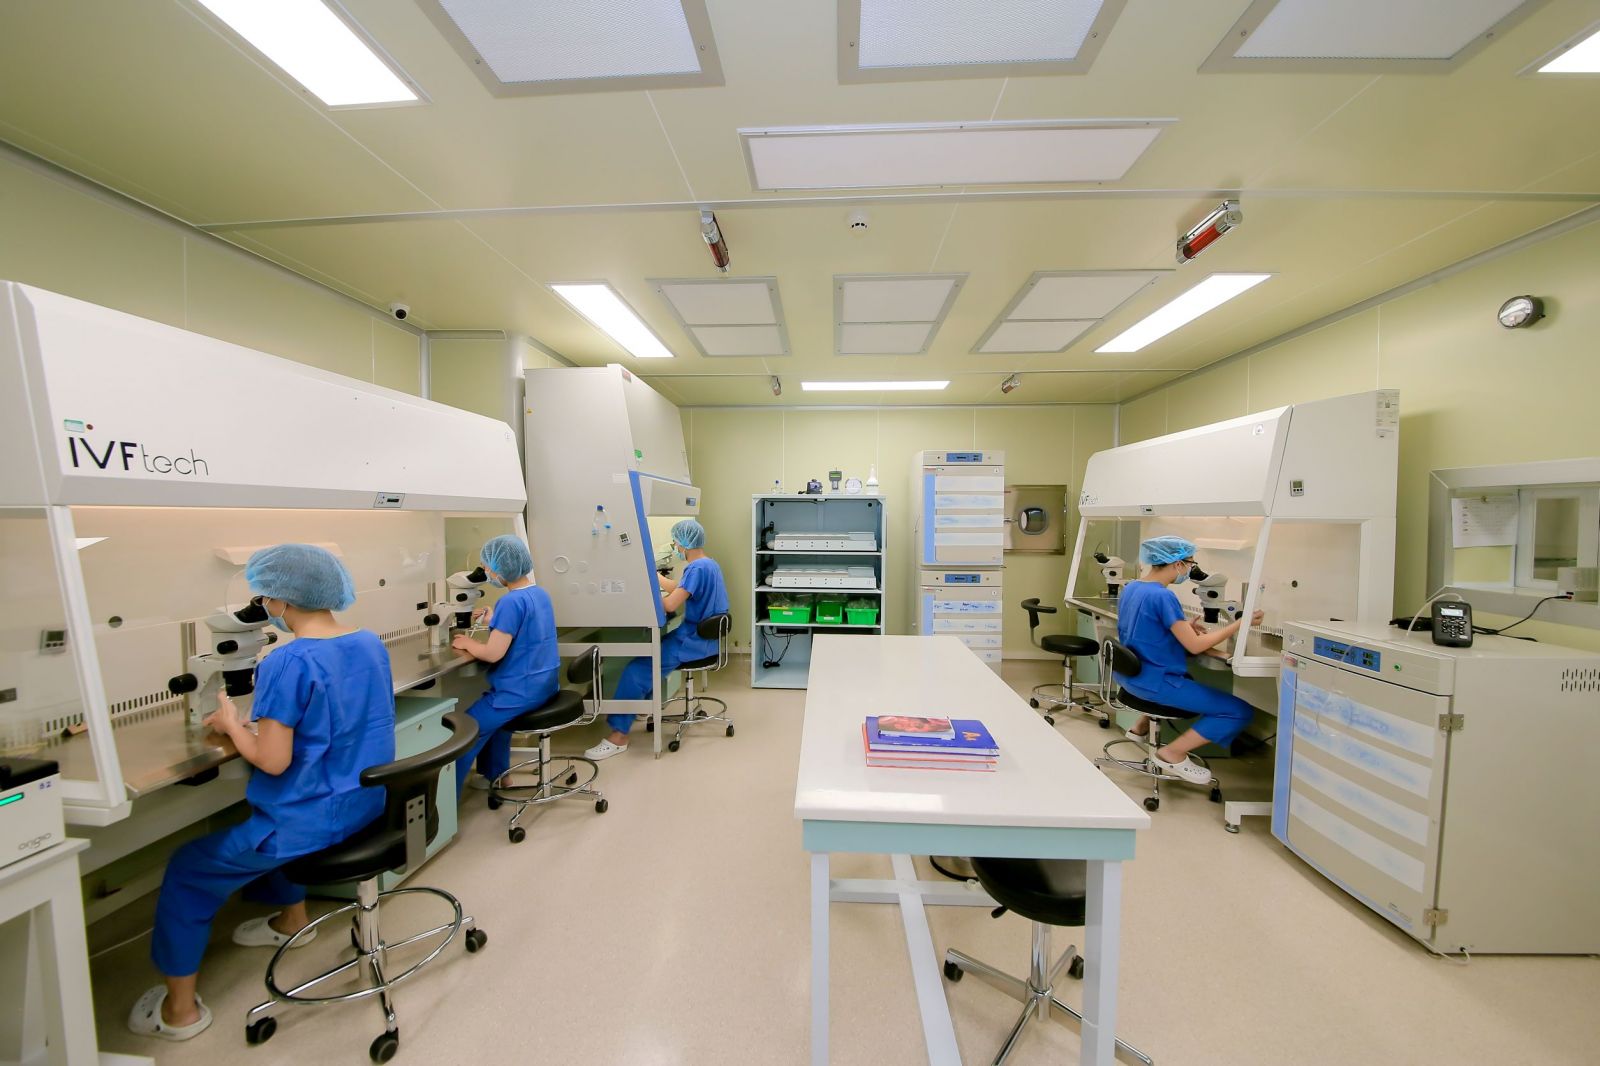 Trung tâm trang bị hệ thống cơ sở vật chất hiện đại bậc nhất với hệ thống phòng lab, tủ cấy và chương trình quản trị chất lượng tiên tiến tương đương với các trung tâm IVF hàng đầu trên thế giới 